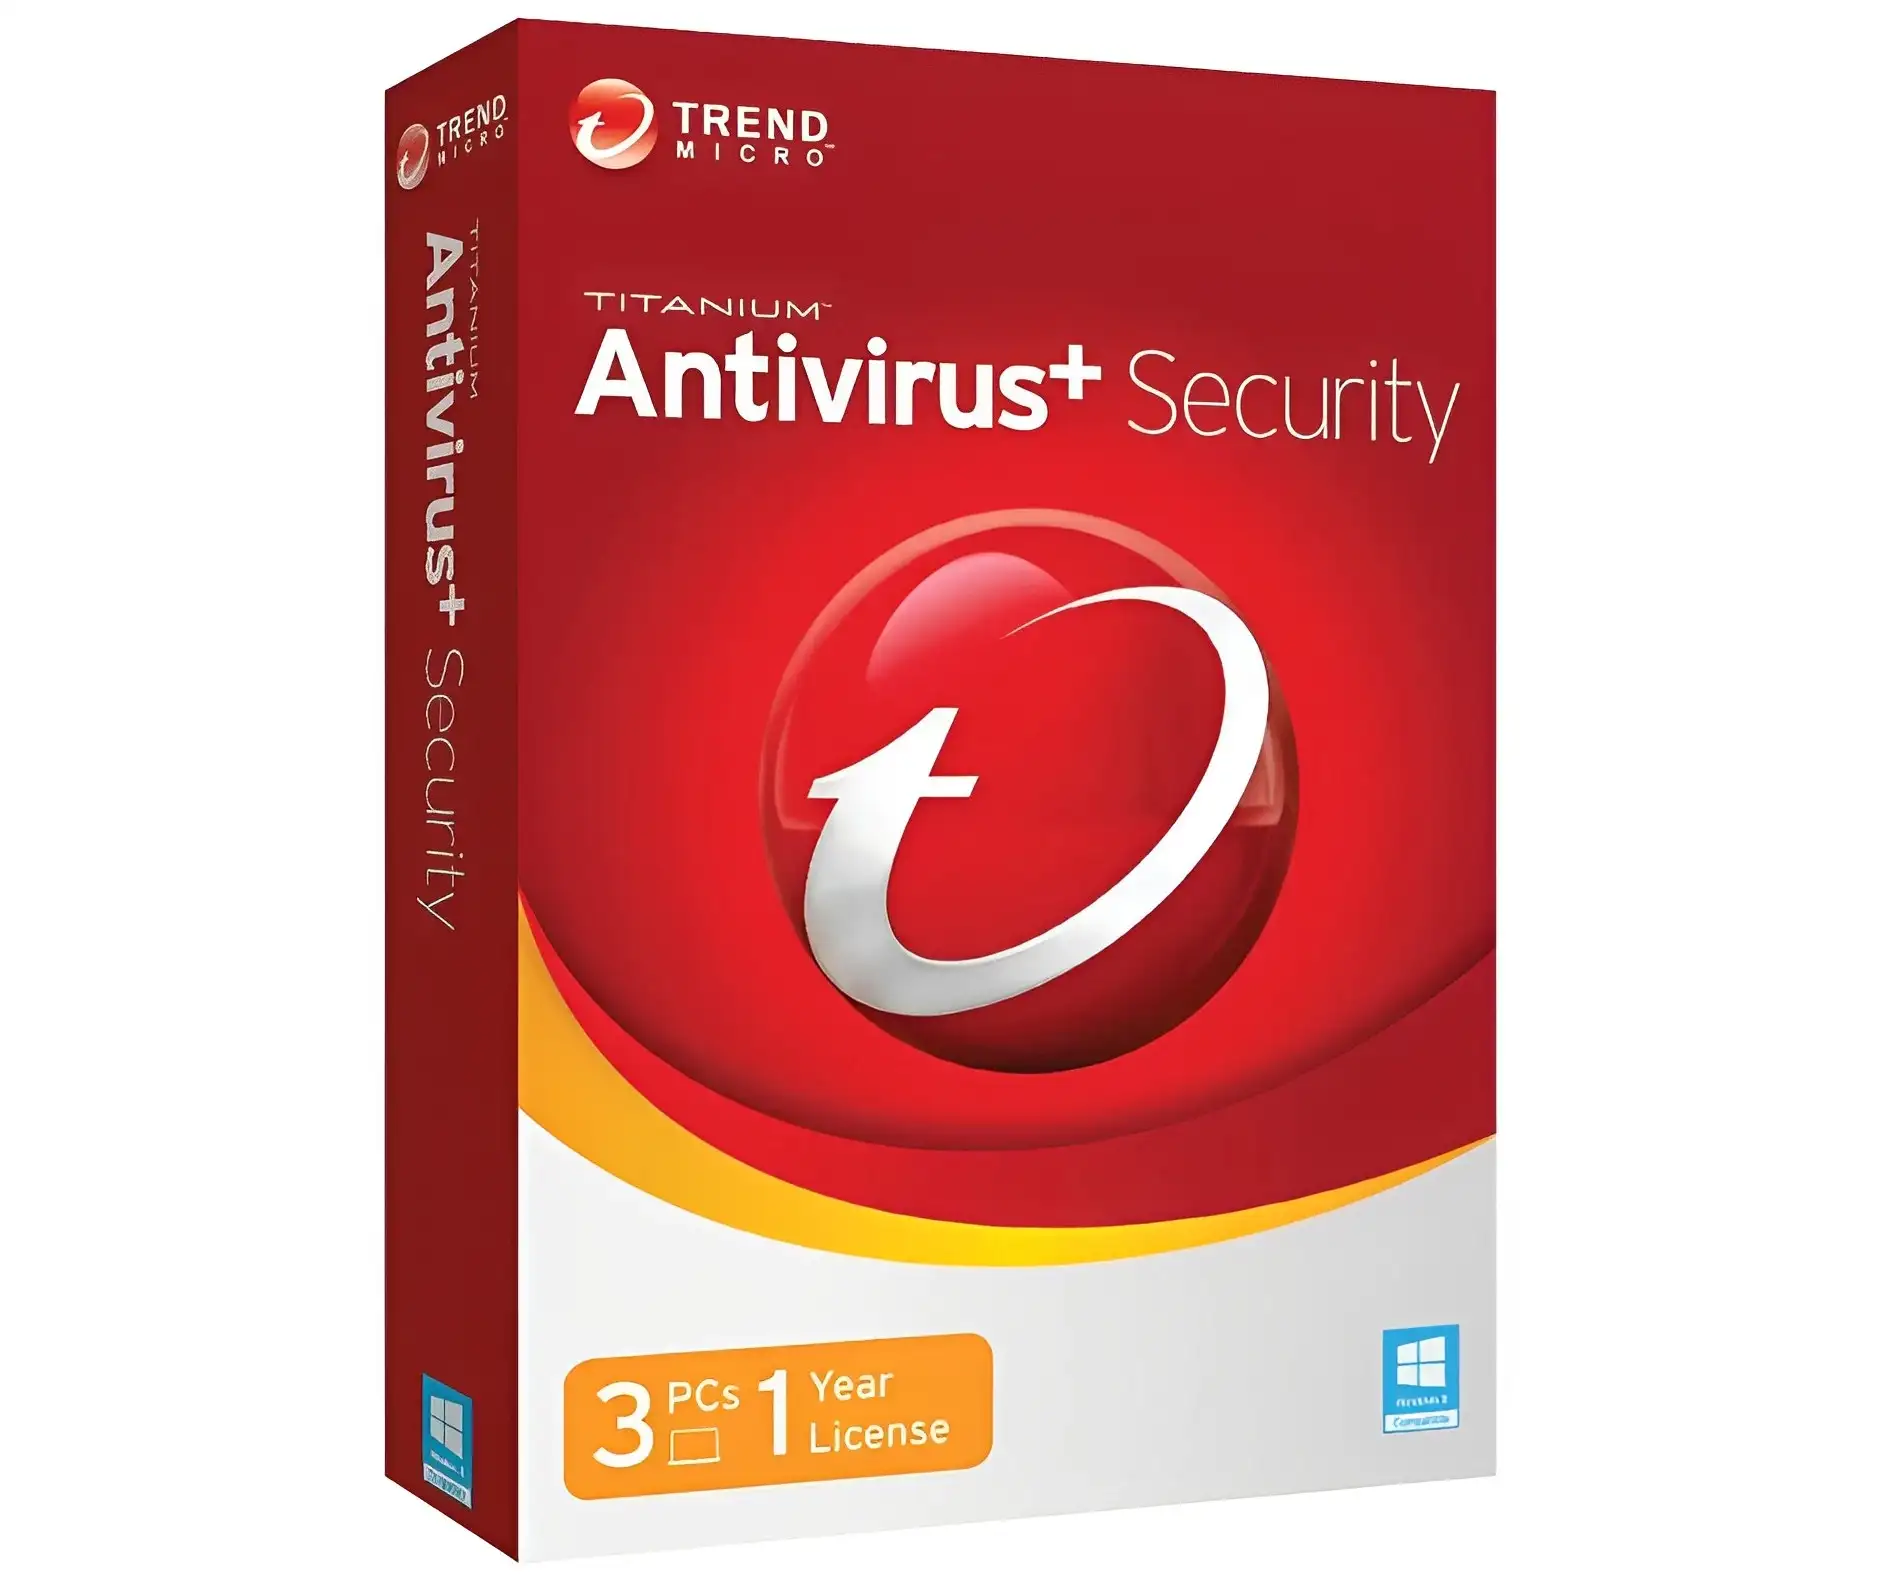 Trend Micro Antivirus + Security - Best Premium Option